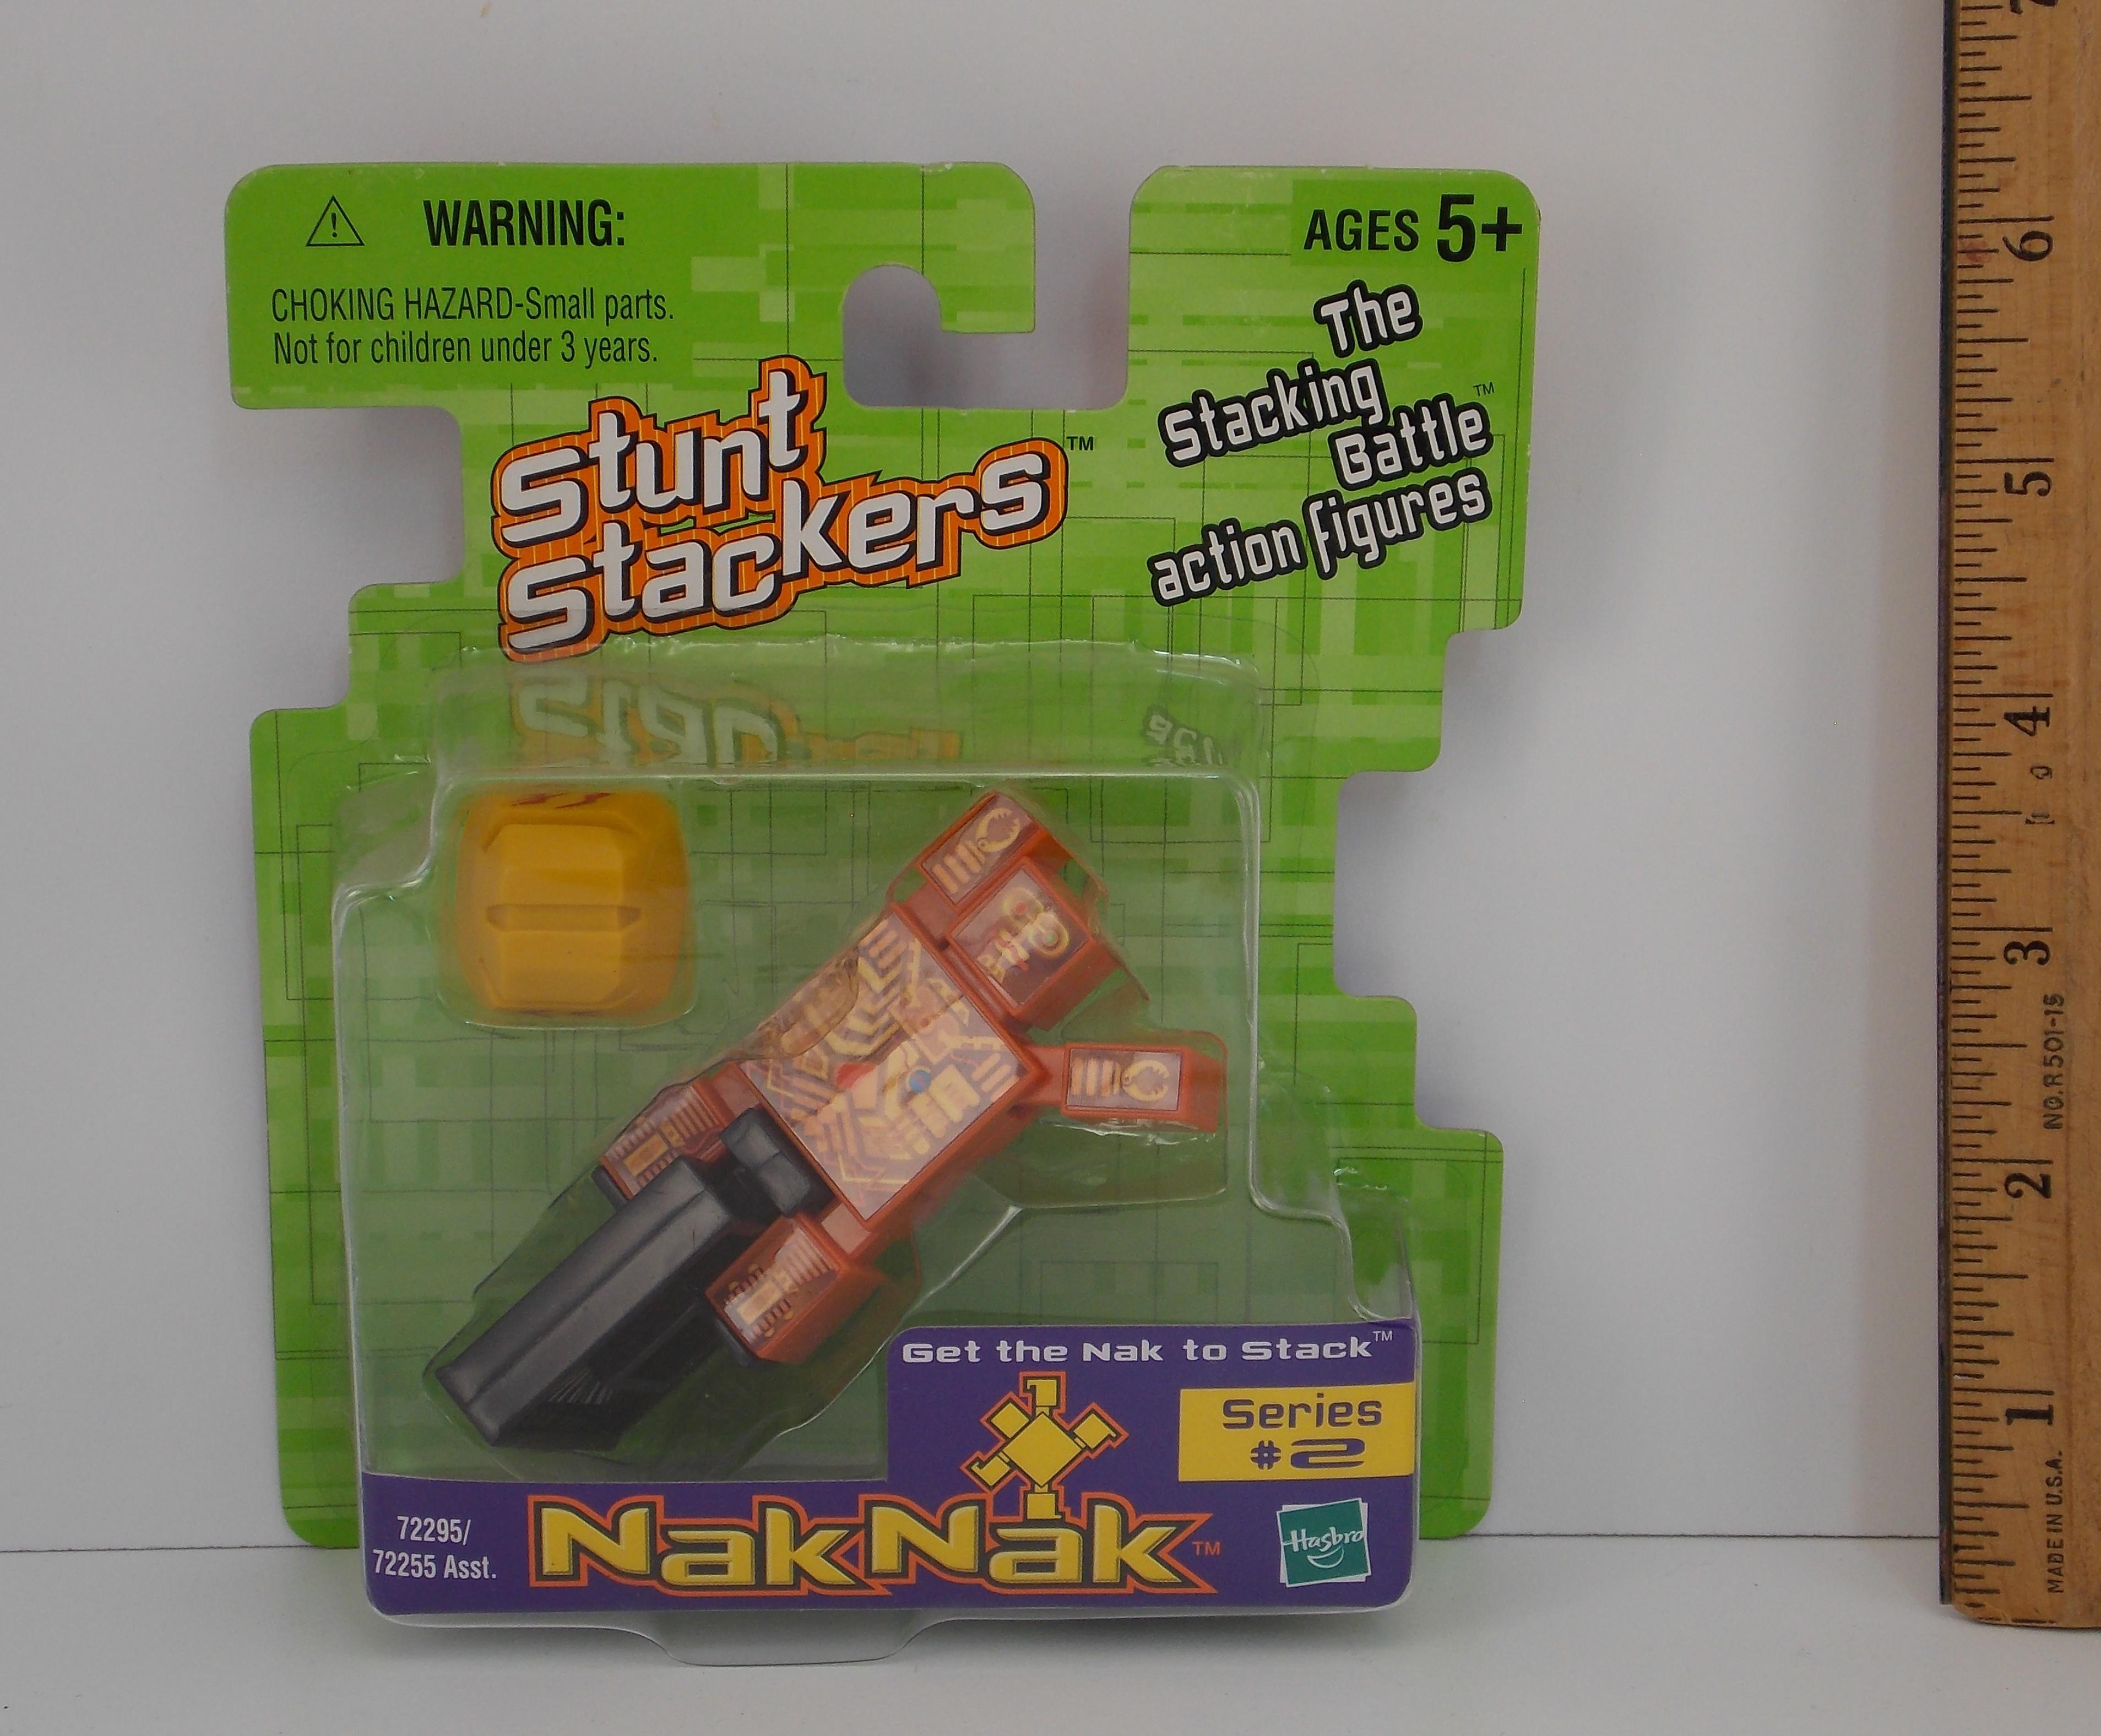 Coppernak #54 Nak Nak Stacker Building Block / Action Figure Toy